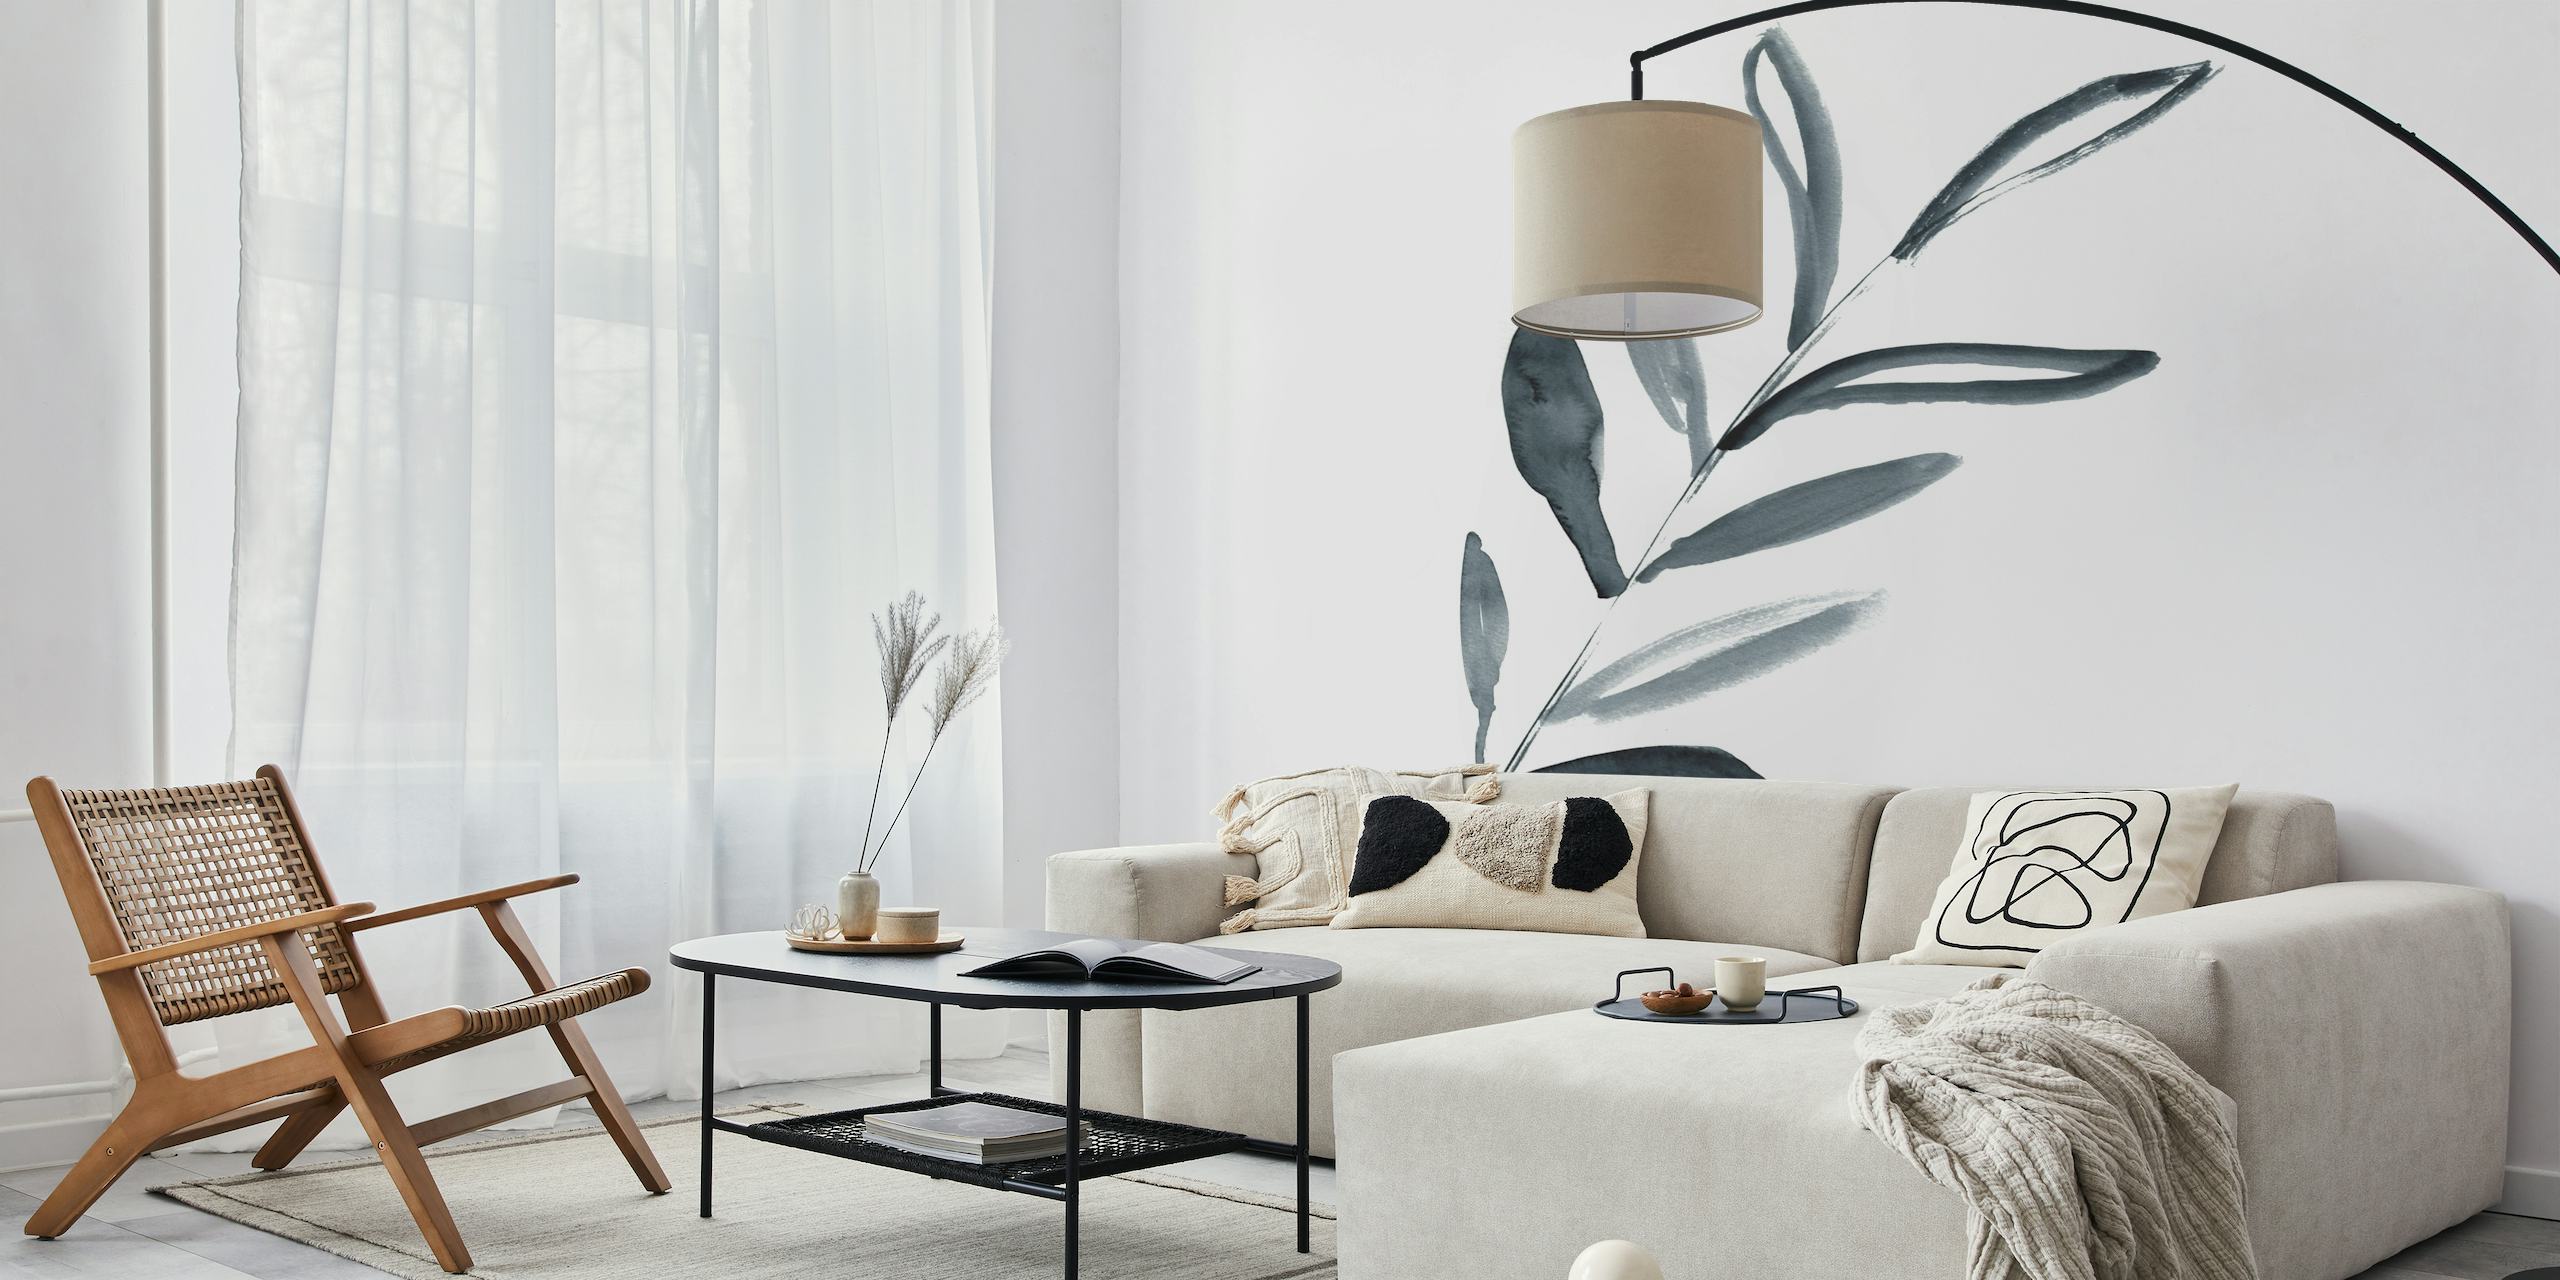 Jednobarevná ručně malovaná nástěnná malba v barvě listové větvičky pro klidnou atmosféru domova.